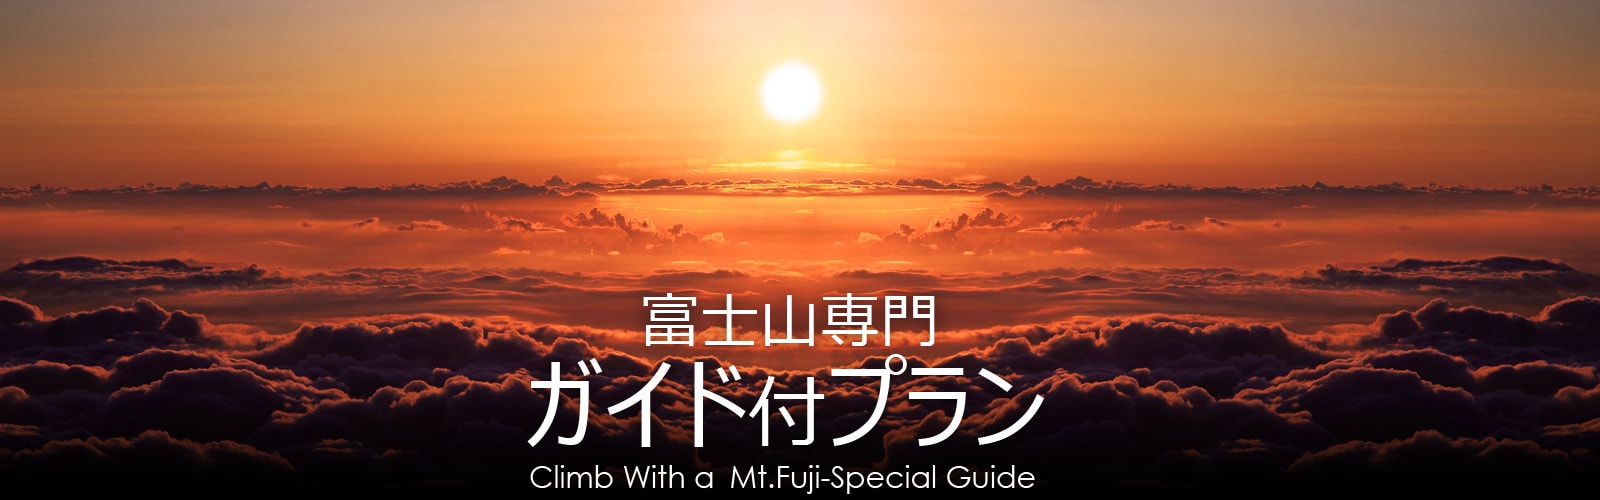 富士山専門登山ガイド付プラン